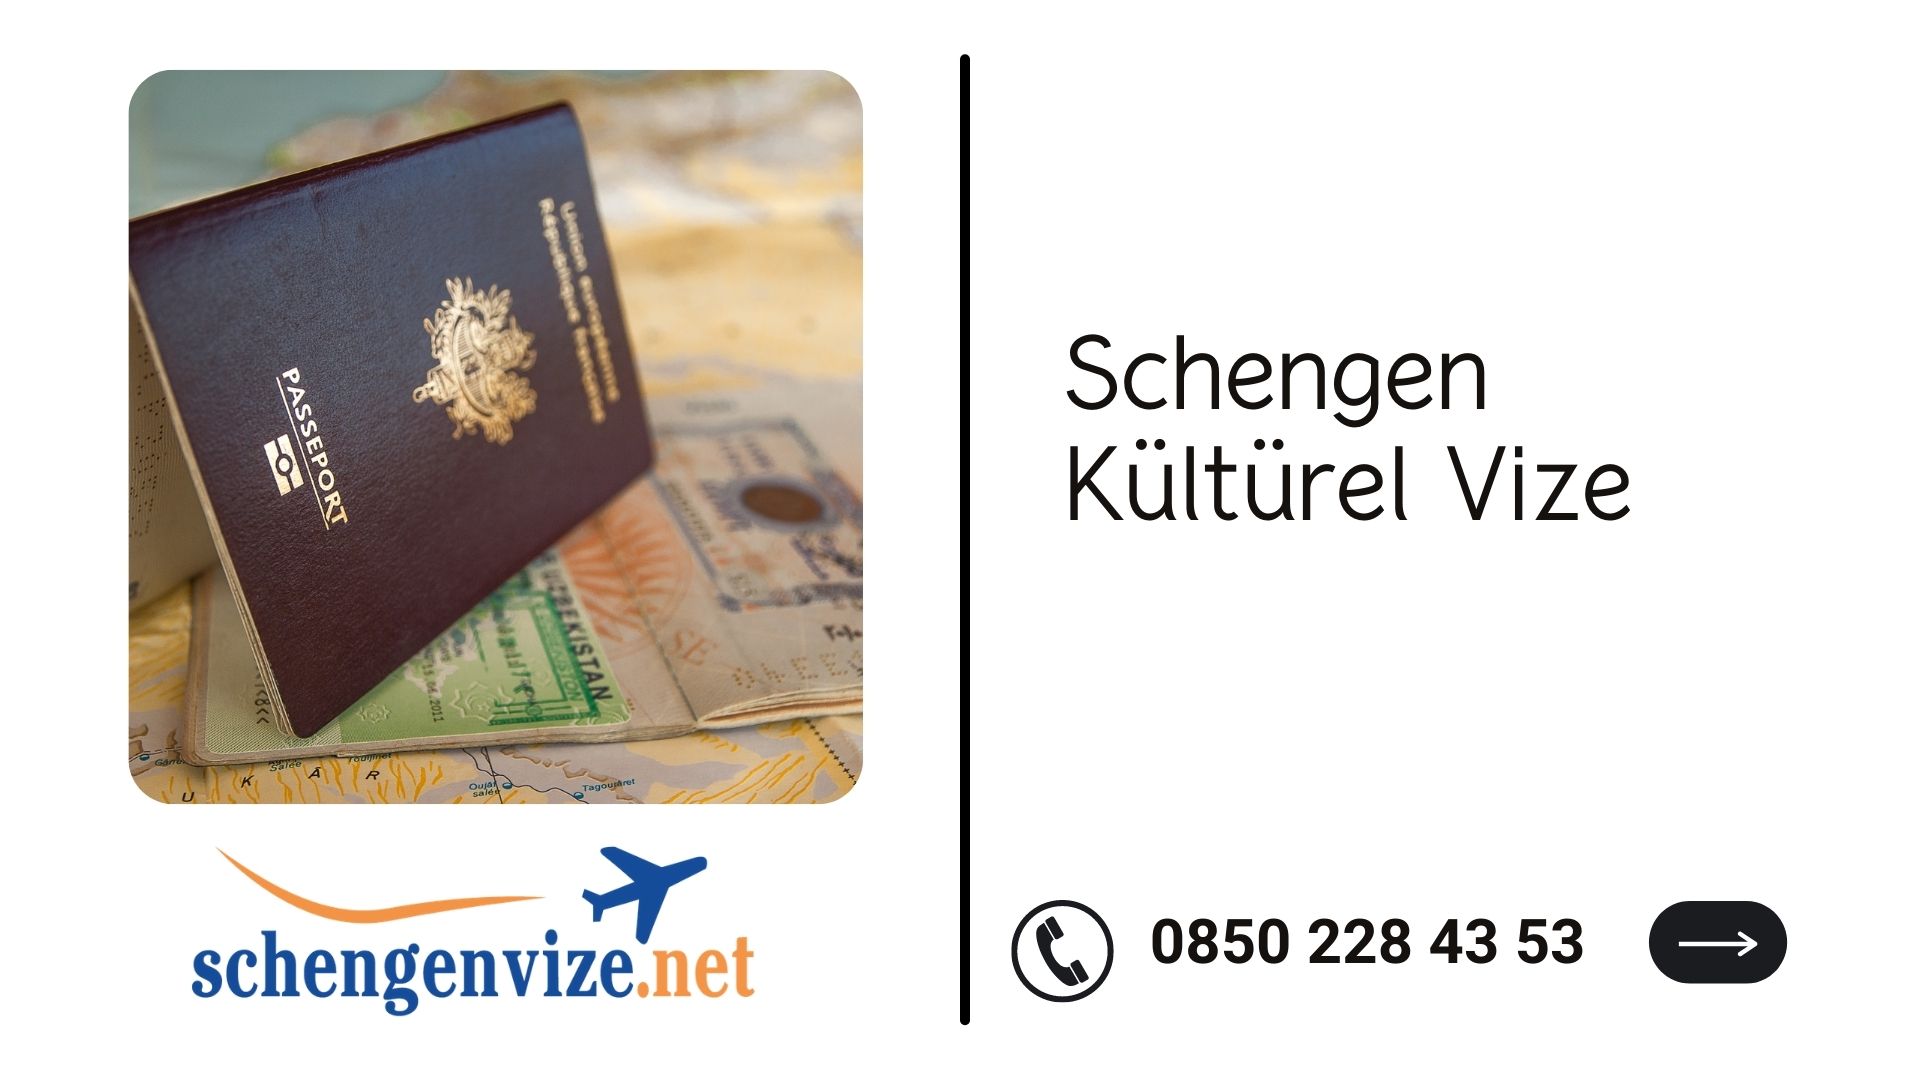 Schengen Kültürel Vize